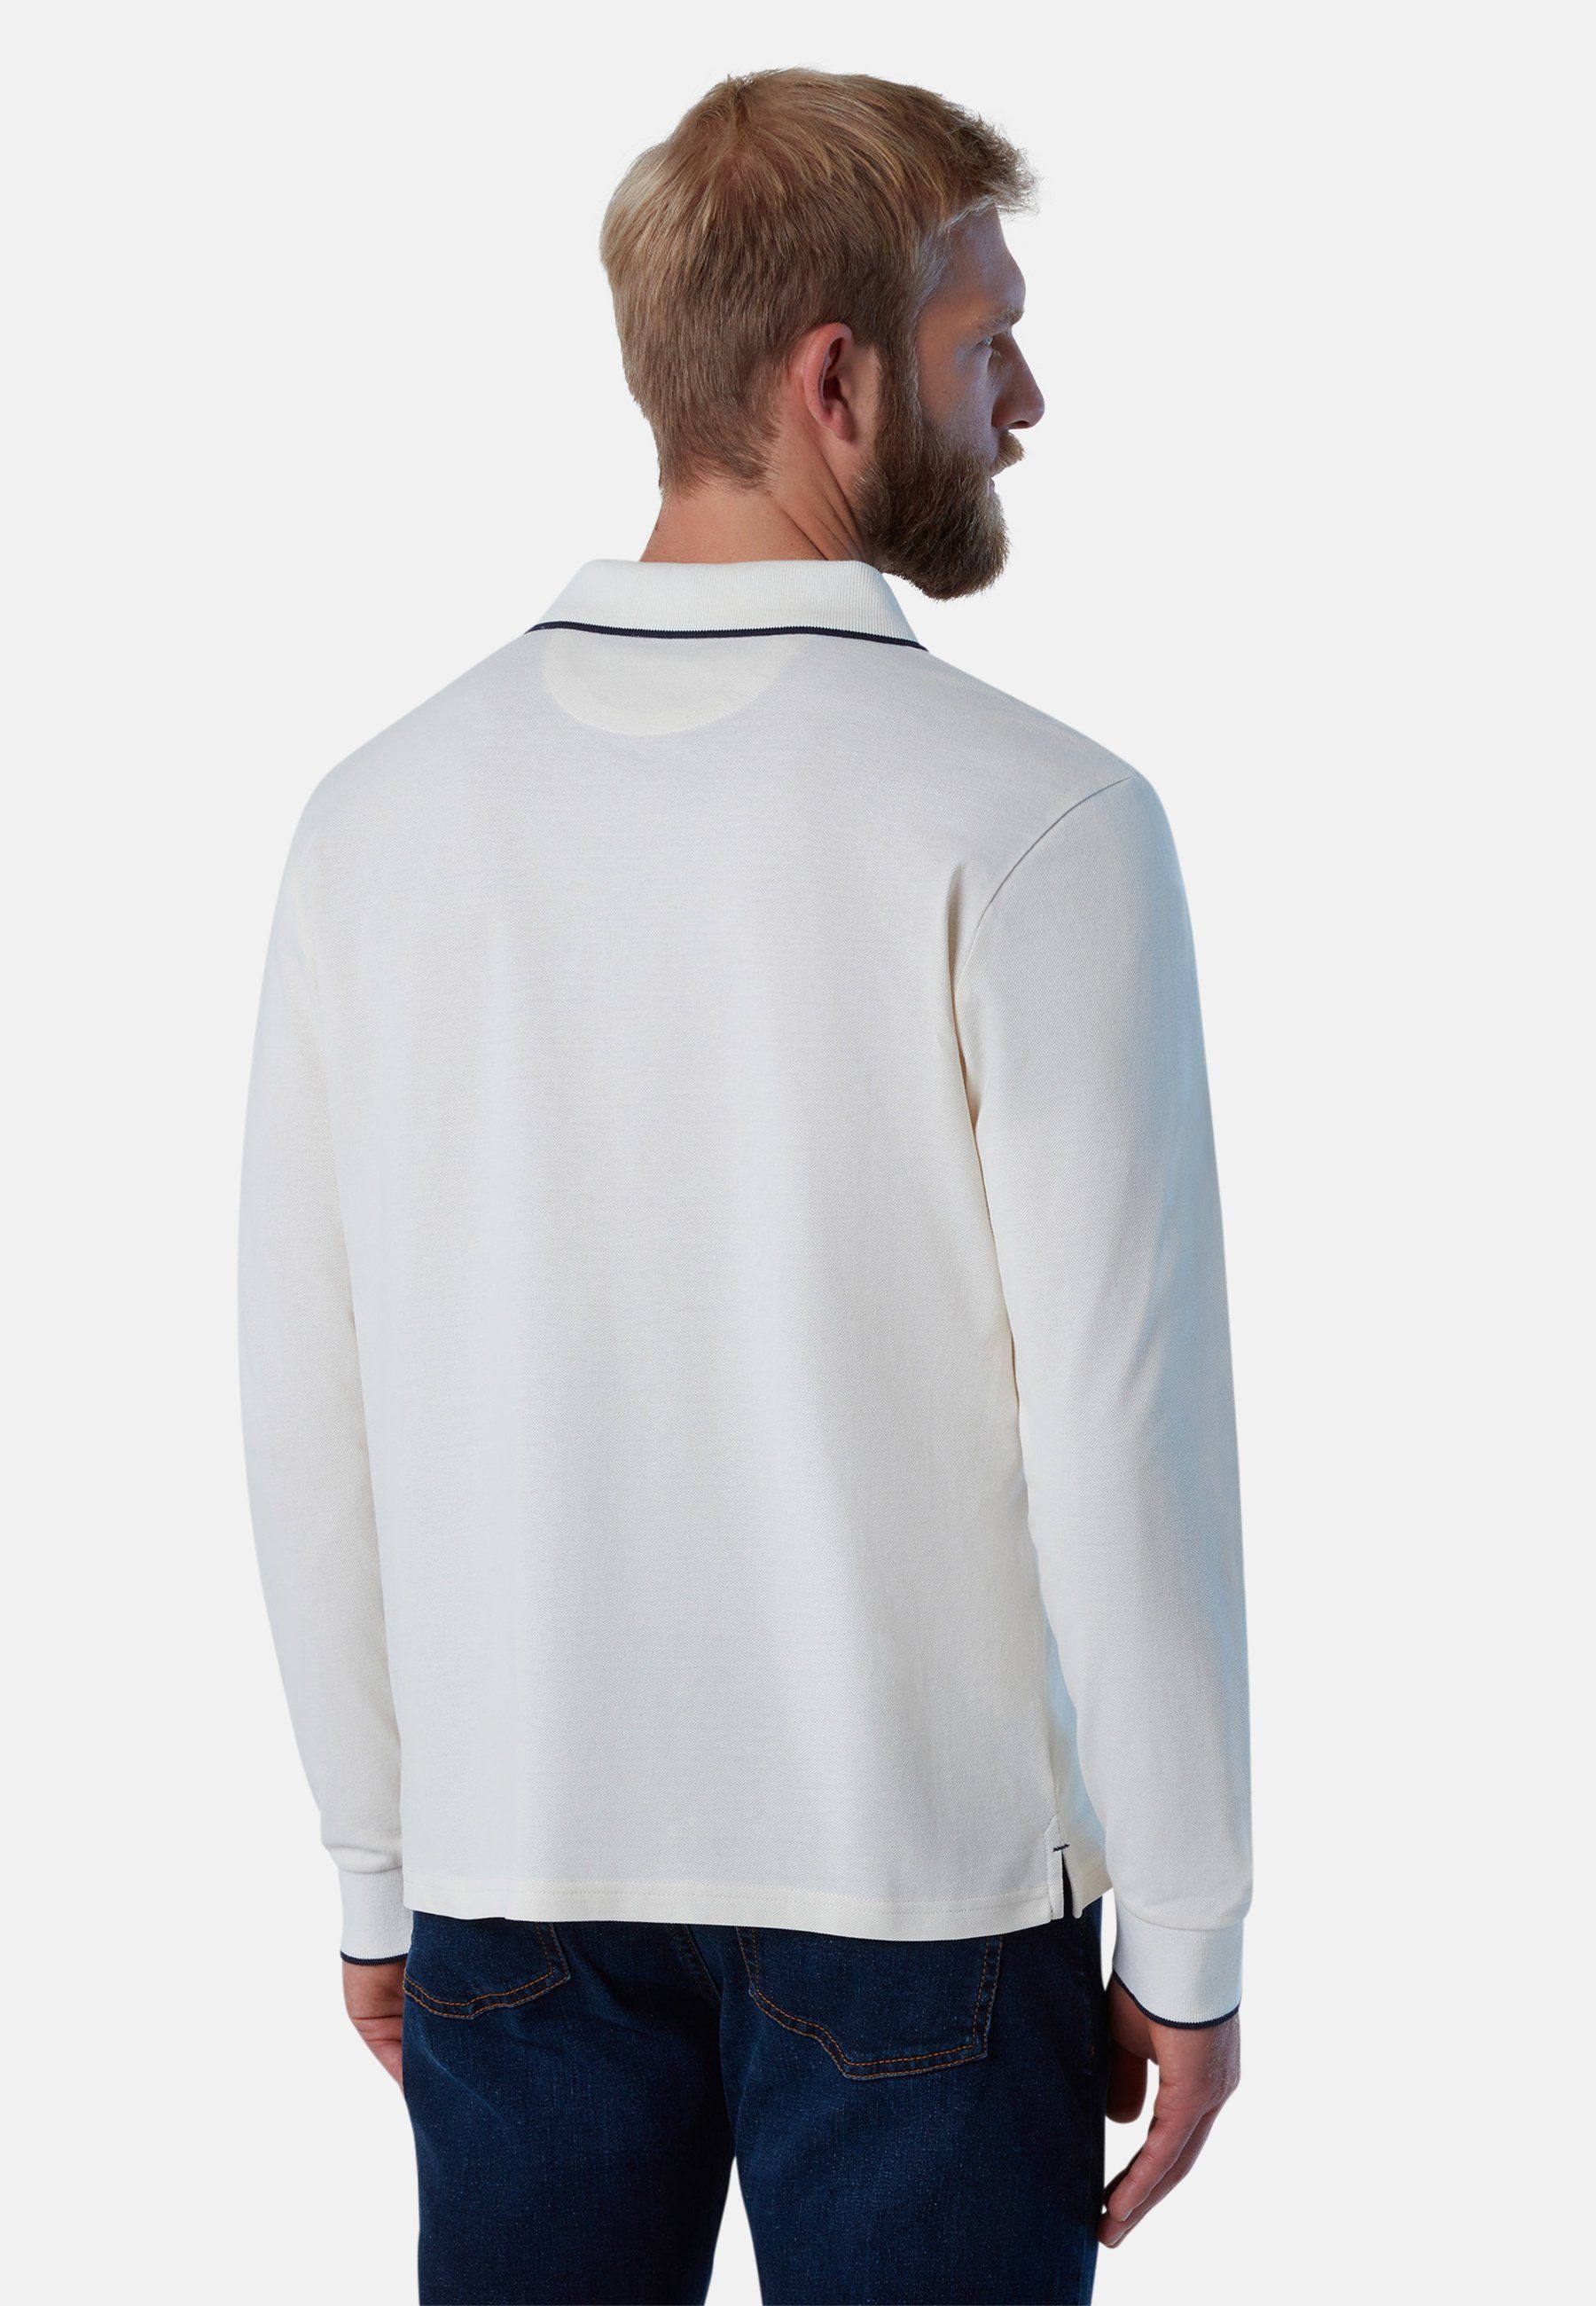 Langärmeliges klassischem Poloshirt Poloshirt mit North weiss Sails Design